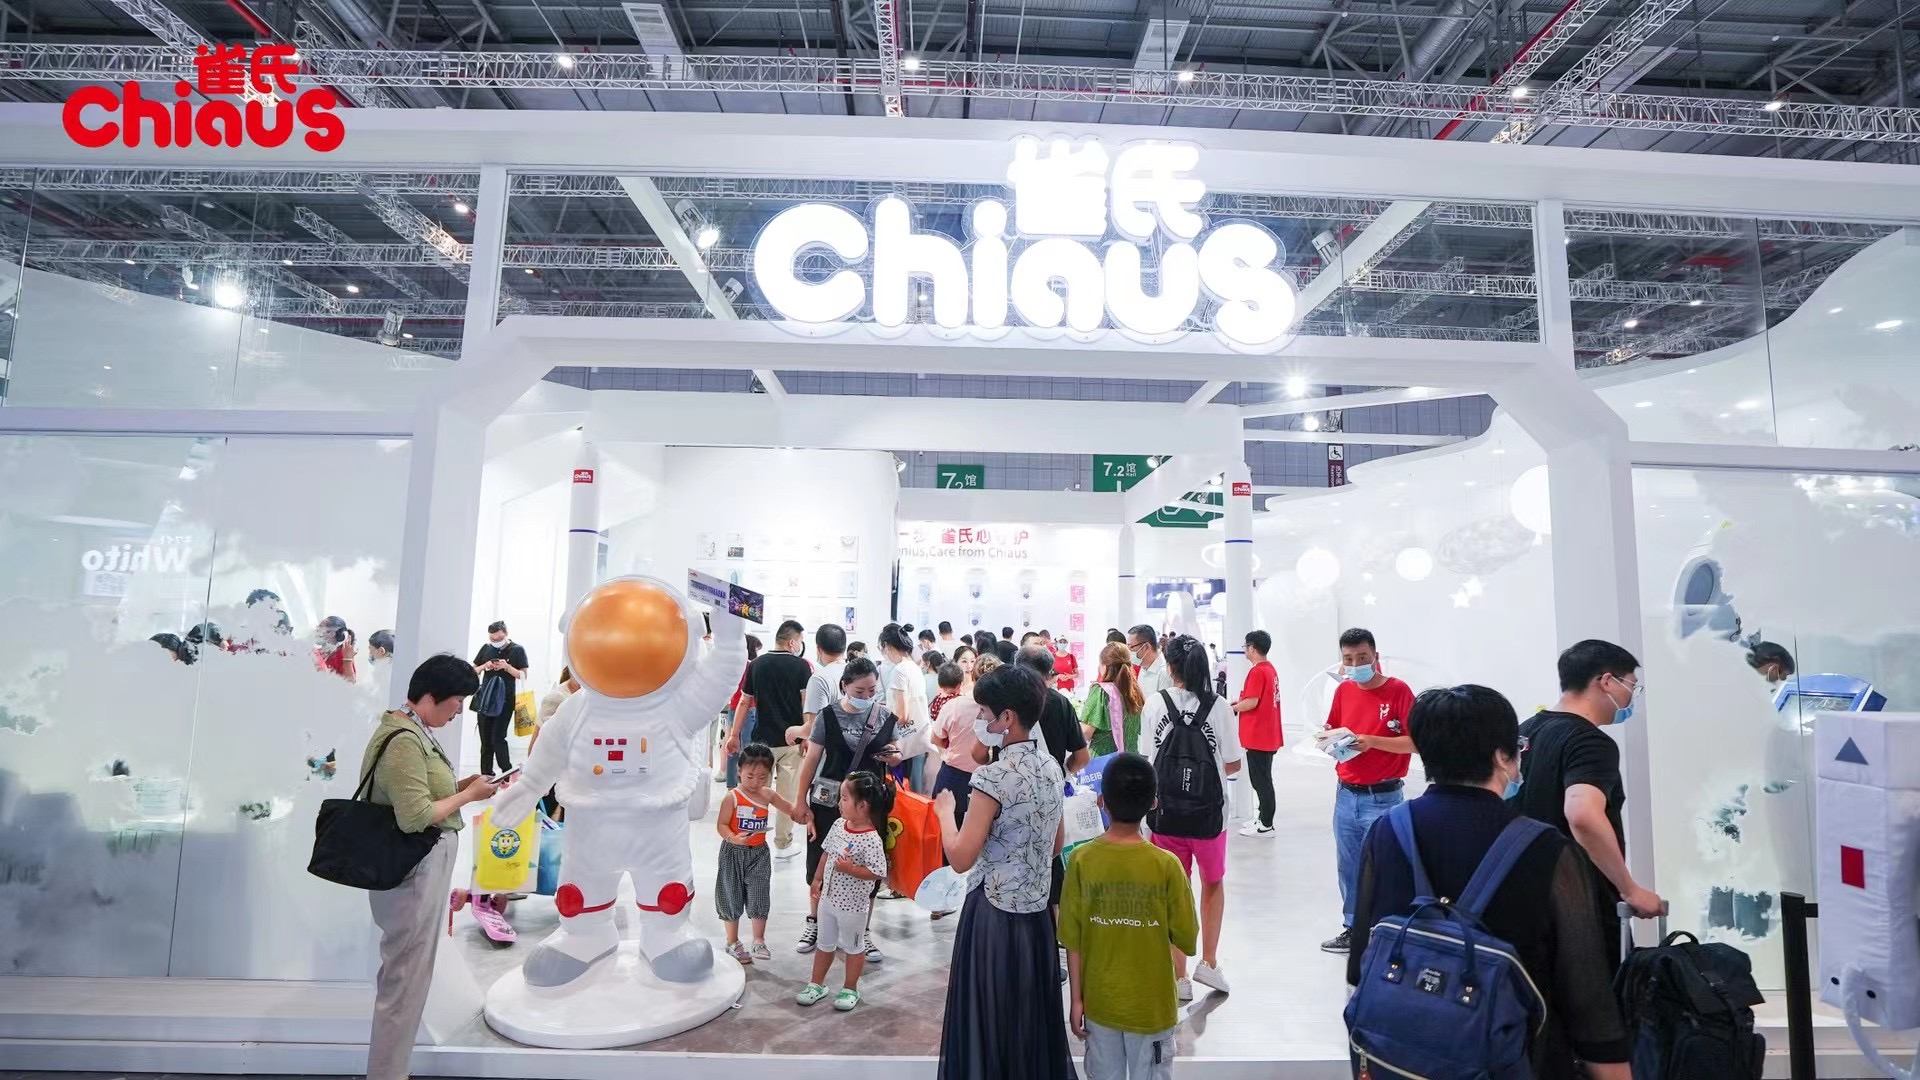 Chiaus-ը մասնակցում է Շանհայ-CBME տոնավաճառում Մանկական խնամքի միջոցների ամենամեծ ցուցադրությանը